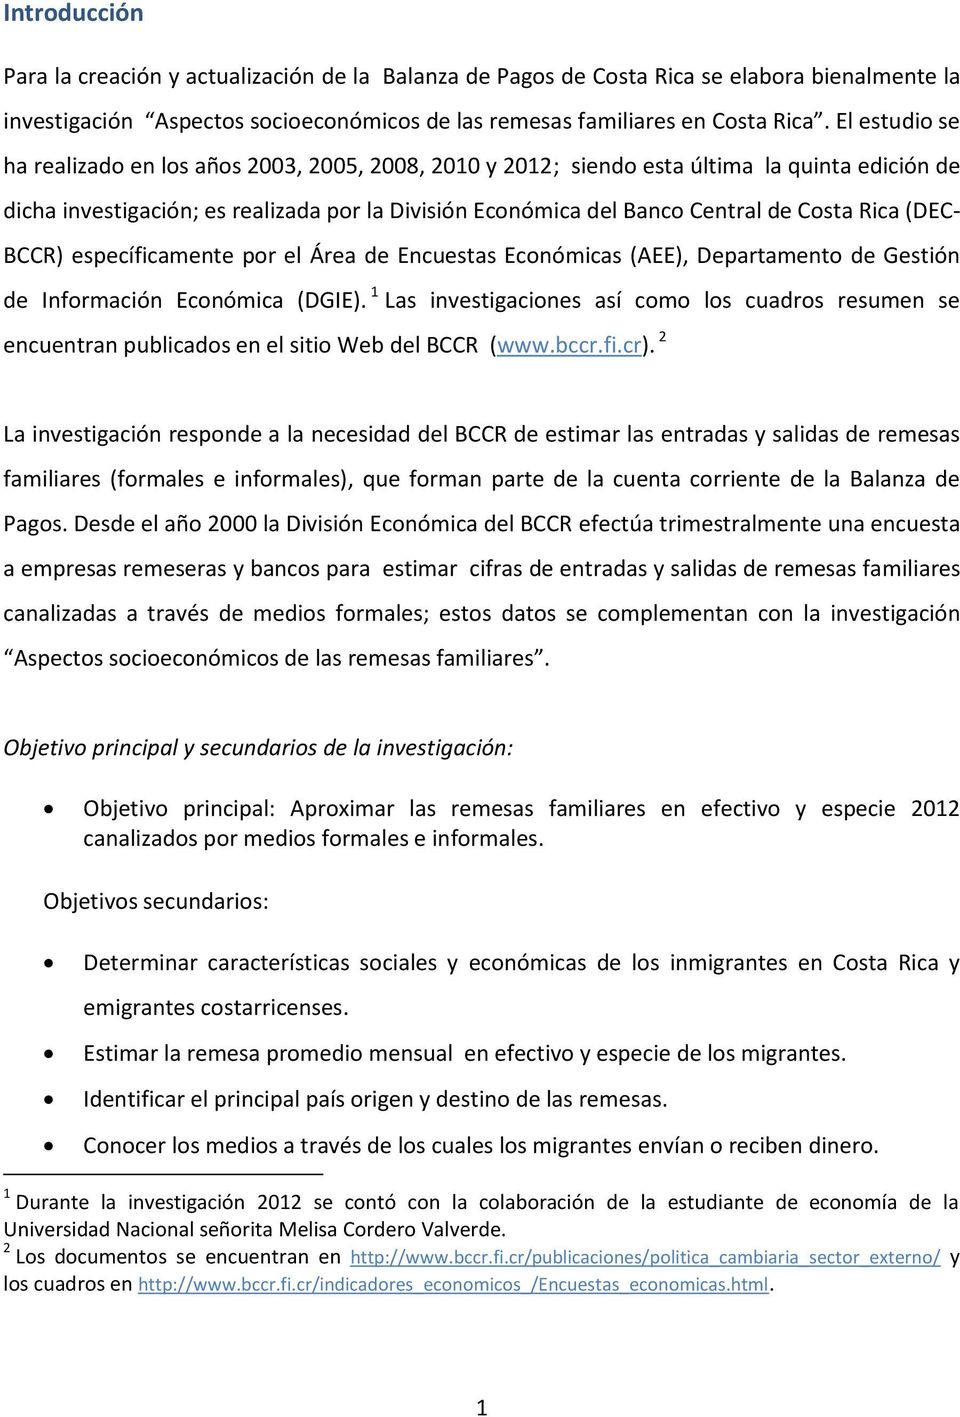 Rica (DEC- BCCR) específicamente por el Área de Encuestas Económicas (AEE), Departamento de Gestión de Información Económica (DGIE).